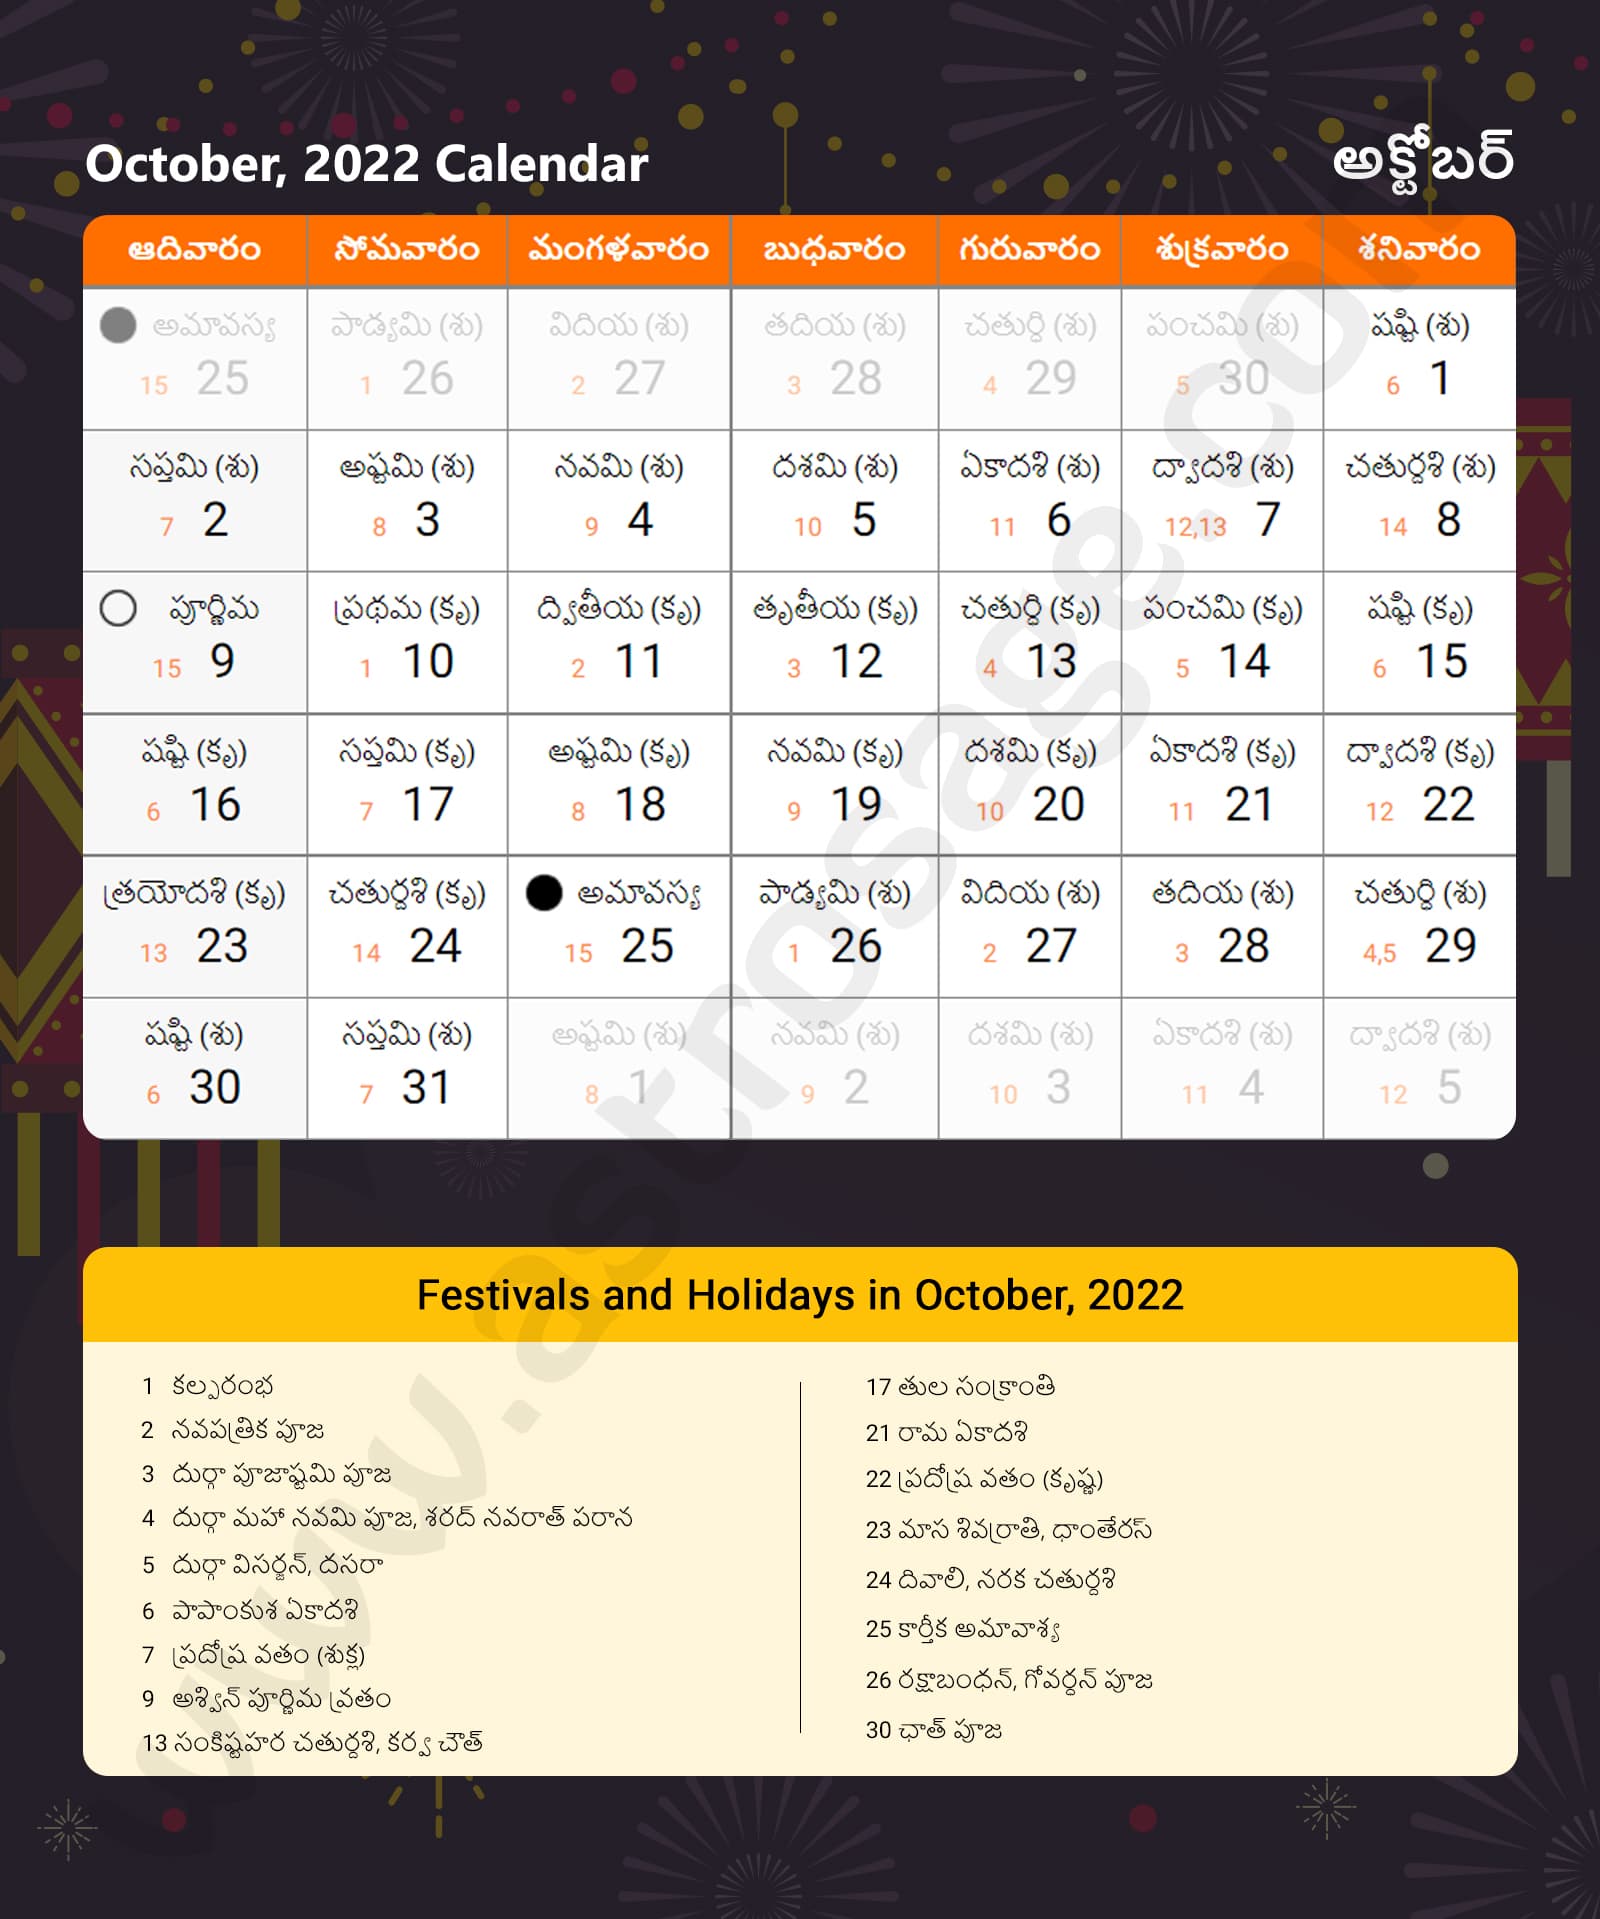 Telugu Calendar 2022 October